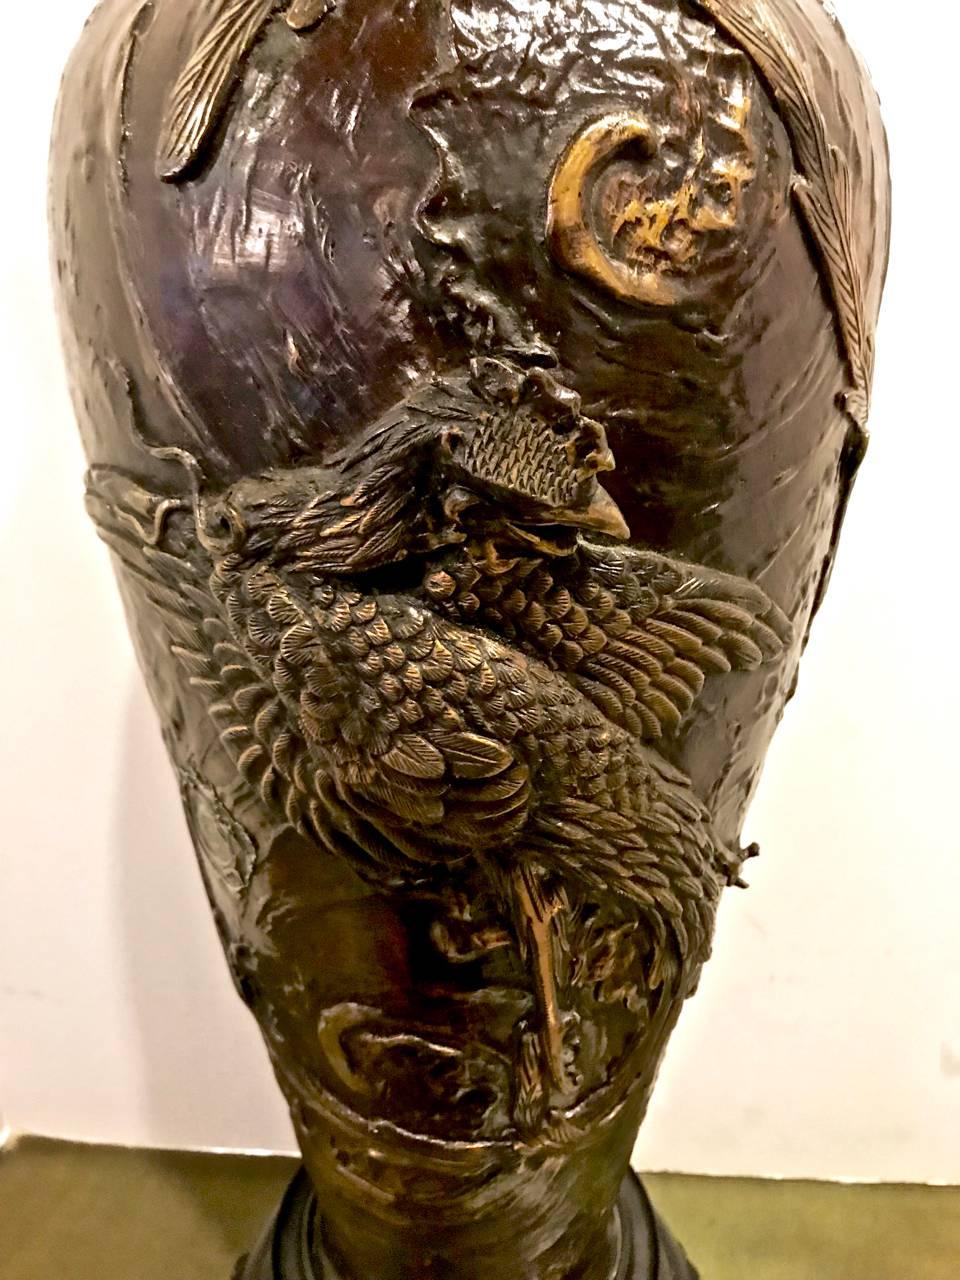 Il s'agit d'un exemple exceptionnel d'un grand vase japonais en bronze de la période Meiji, maintenant monté comme une lampe. Le vase est moulé avec un haut relief et des coqs et des perles flamboyantes finement détaillés. Chaque détail est finement